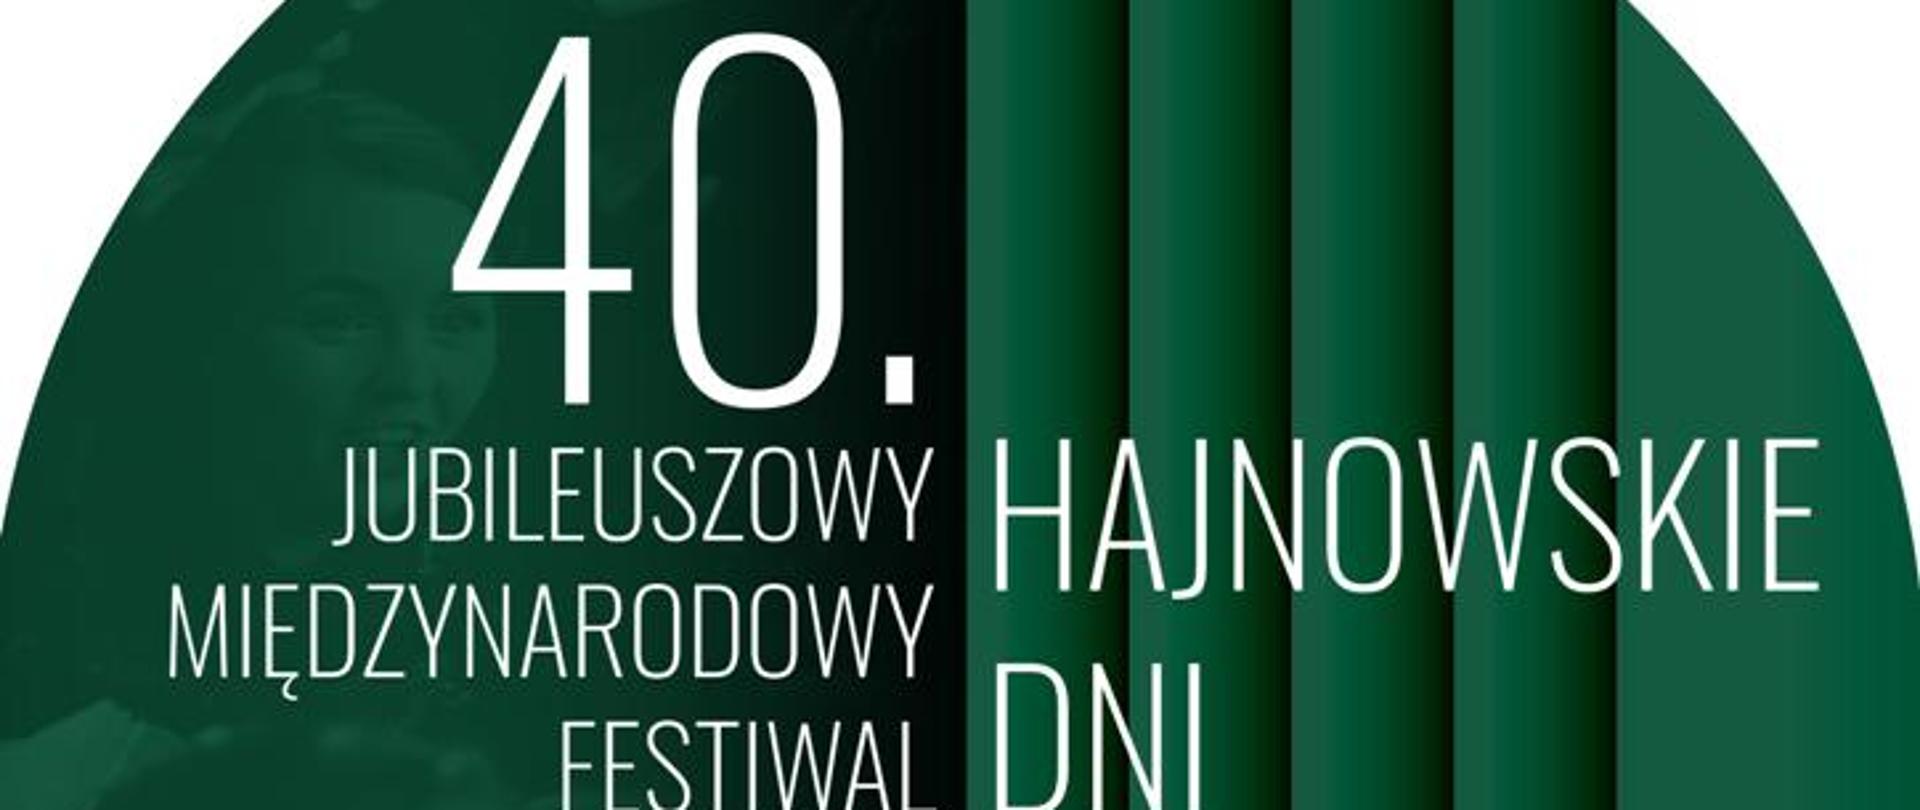 40 Jubileuszowy Międzynarodowy Festiwal Hajnowskie Dni Muzyki Cerkiewnej 13-18 września 2021 Sobór Św. Trójcy. Plakat promujący wydarzenie - na zielono - białym tle białe napisy, u dołu logotypy patronatów